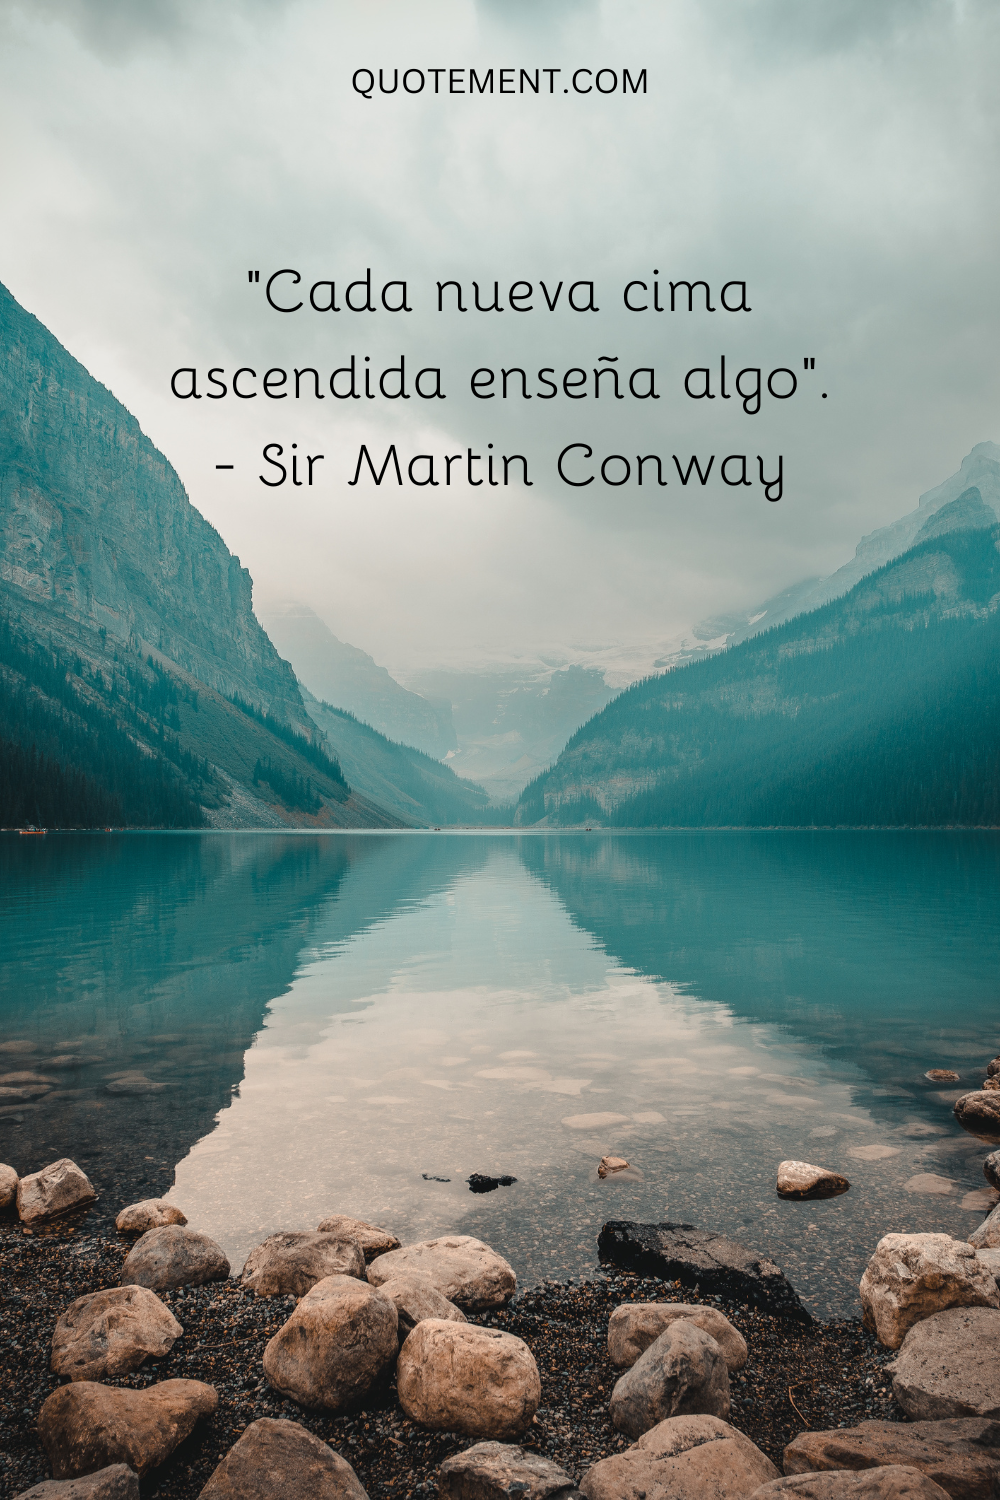 "Cada nueva cima ascendida enseña algo". - Sir Martin Conway